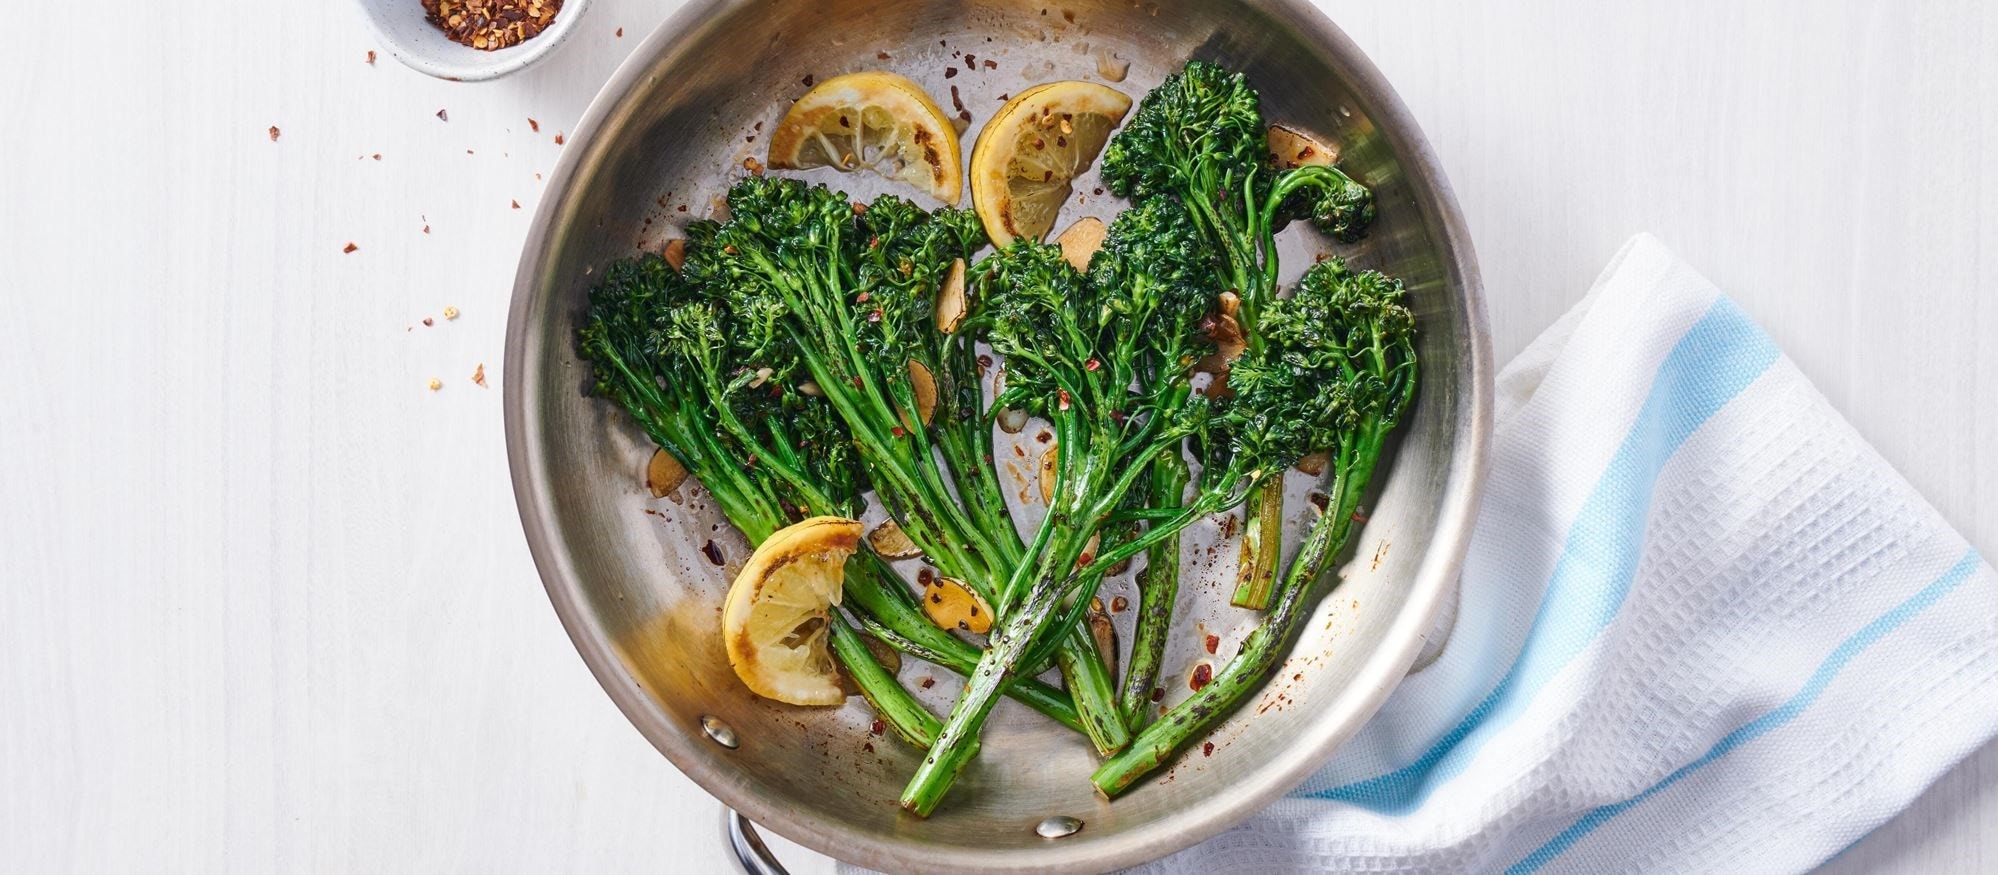 Fácil y deliciosa receta de broccolini en con la configuración del modo Blanch (escaldar) de su horno Wolf